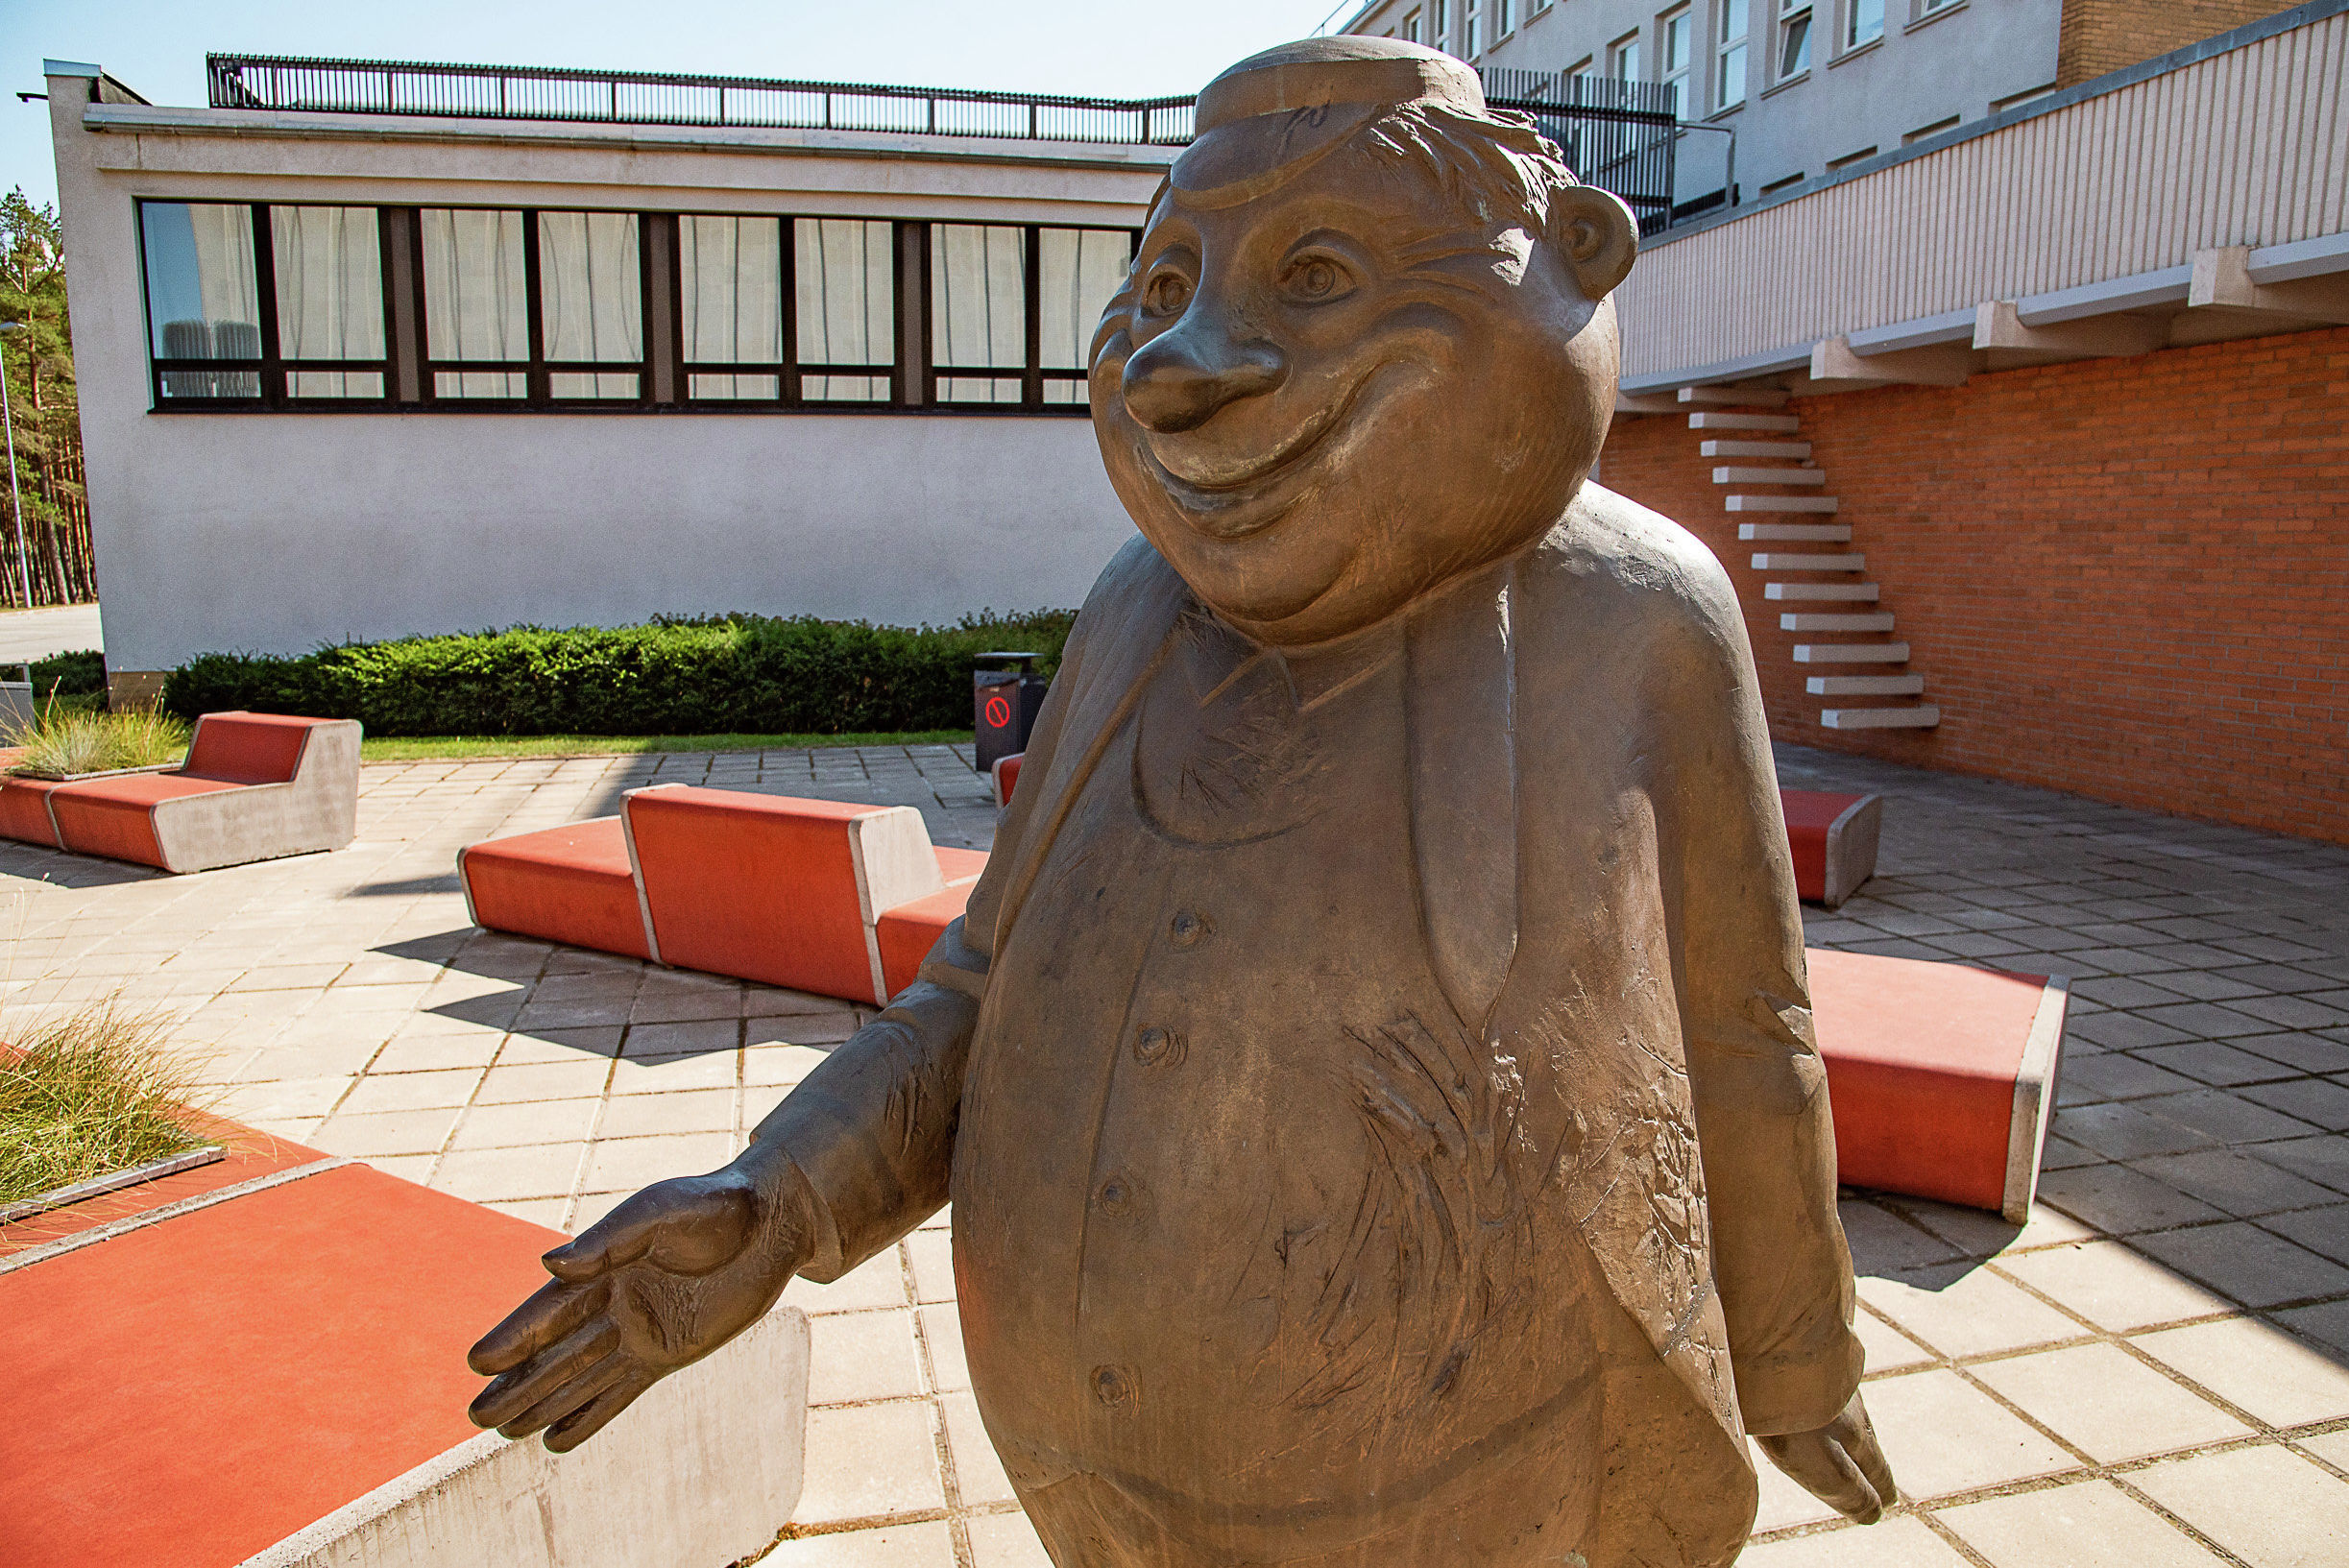 Памятник "вечному студенту" Юлиусу, работы скульптора Тийу Кирсипуу был установлен у главного входа к 90-летию Таллинского Технического университета